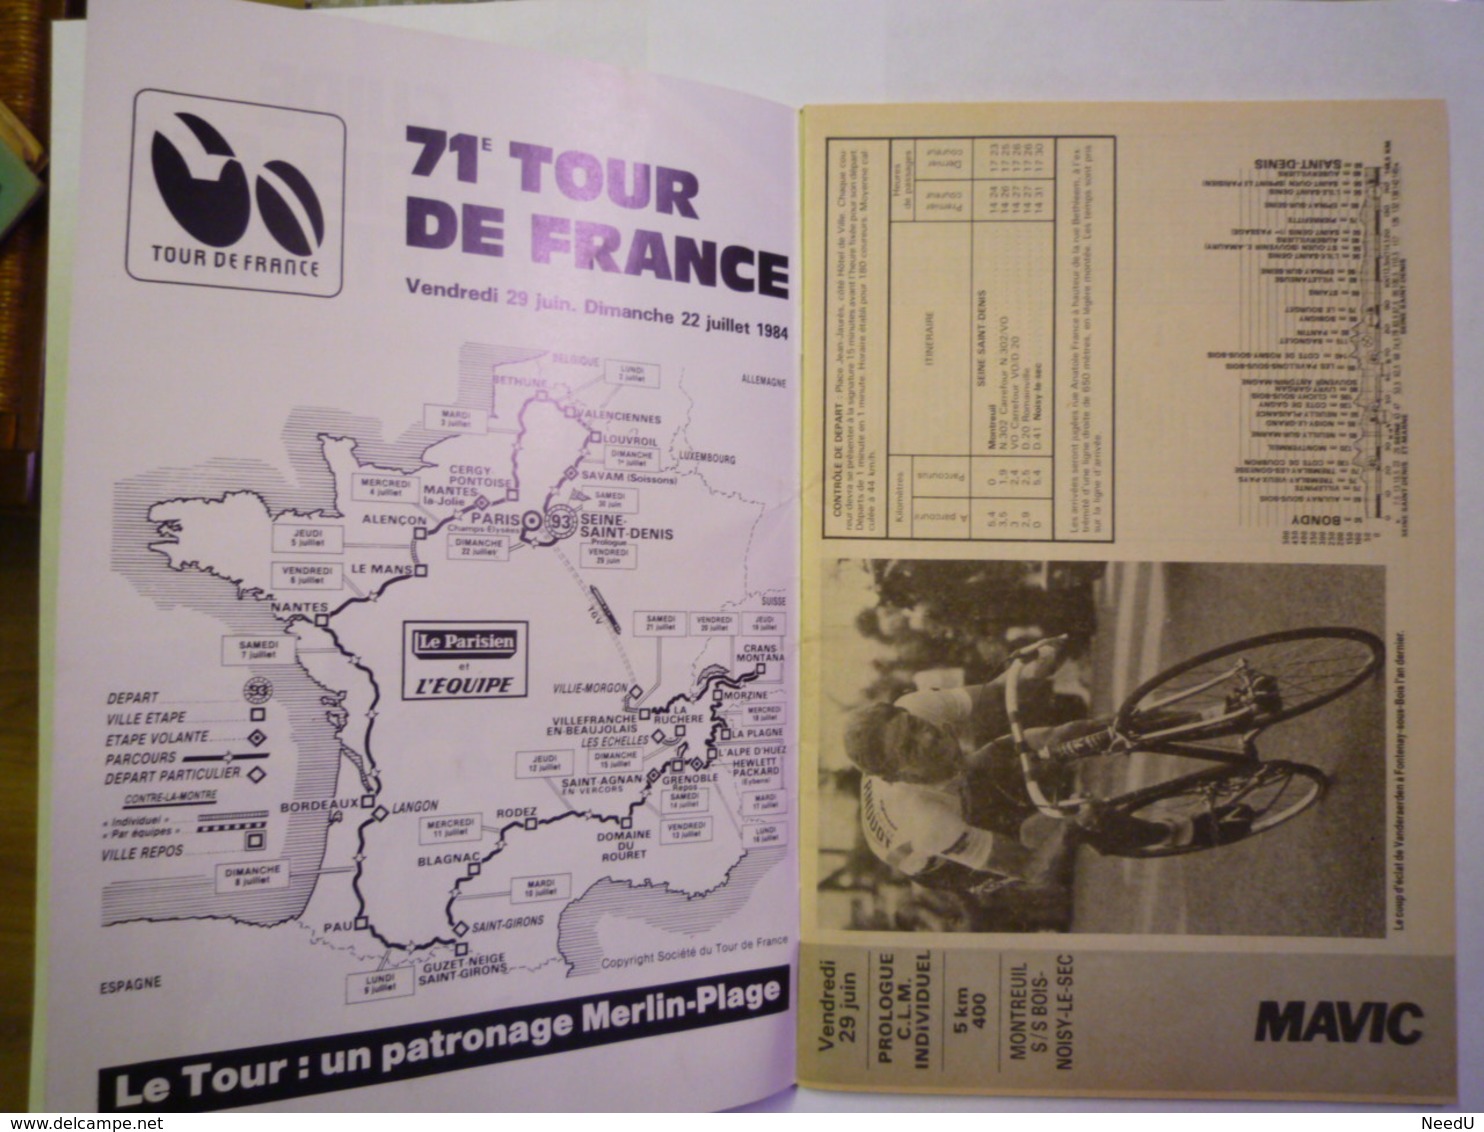 GP 2019 - 1667  TOUR De FRANCE 1984  :  Guide Officiel Des 23 étapes   XXX - Ciclismo